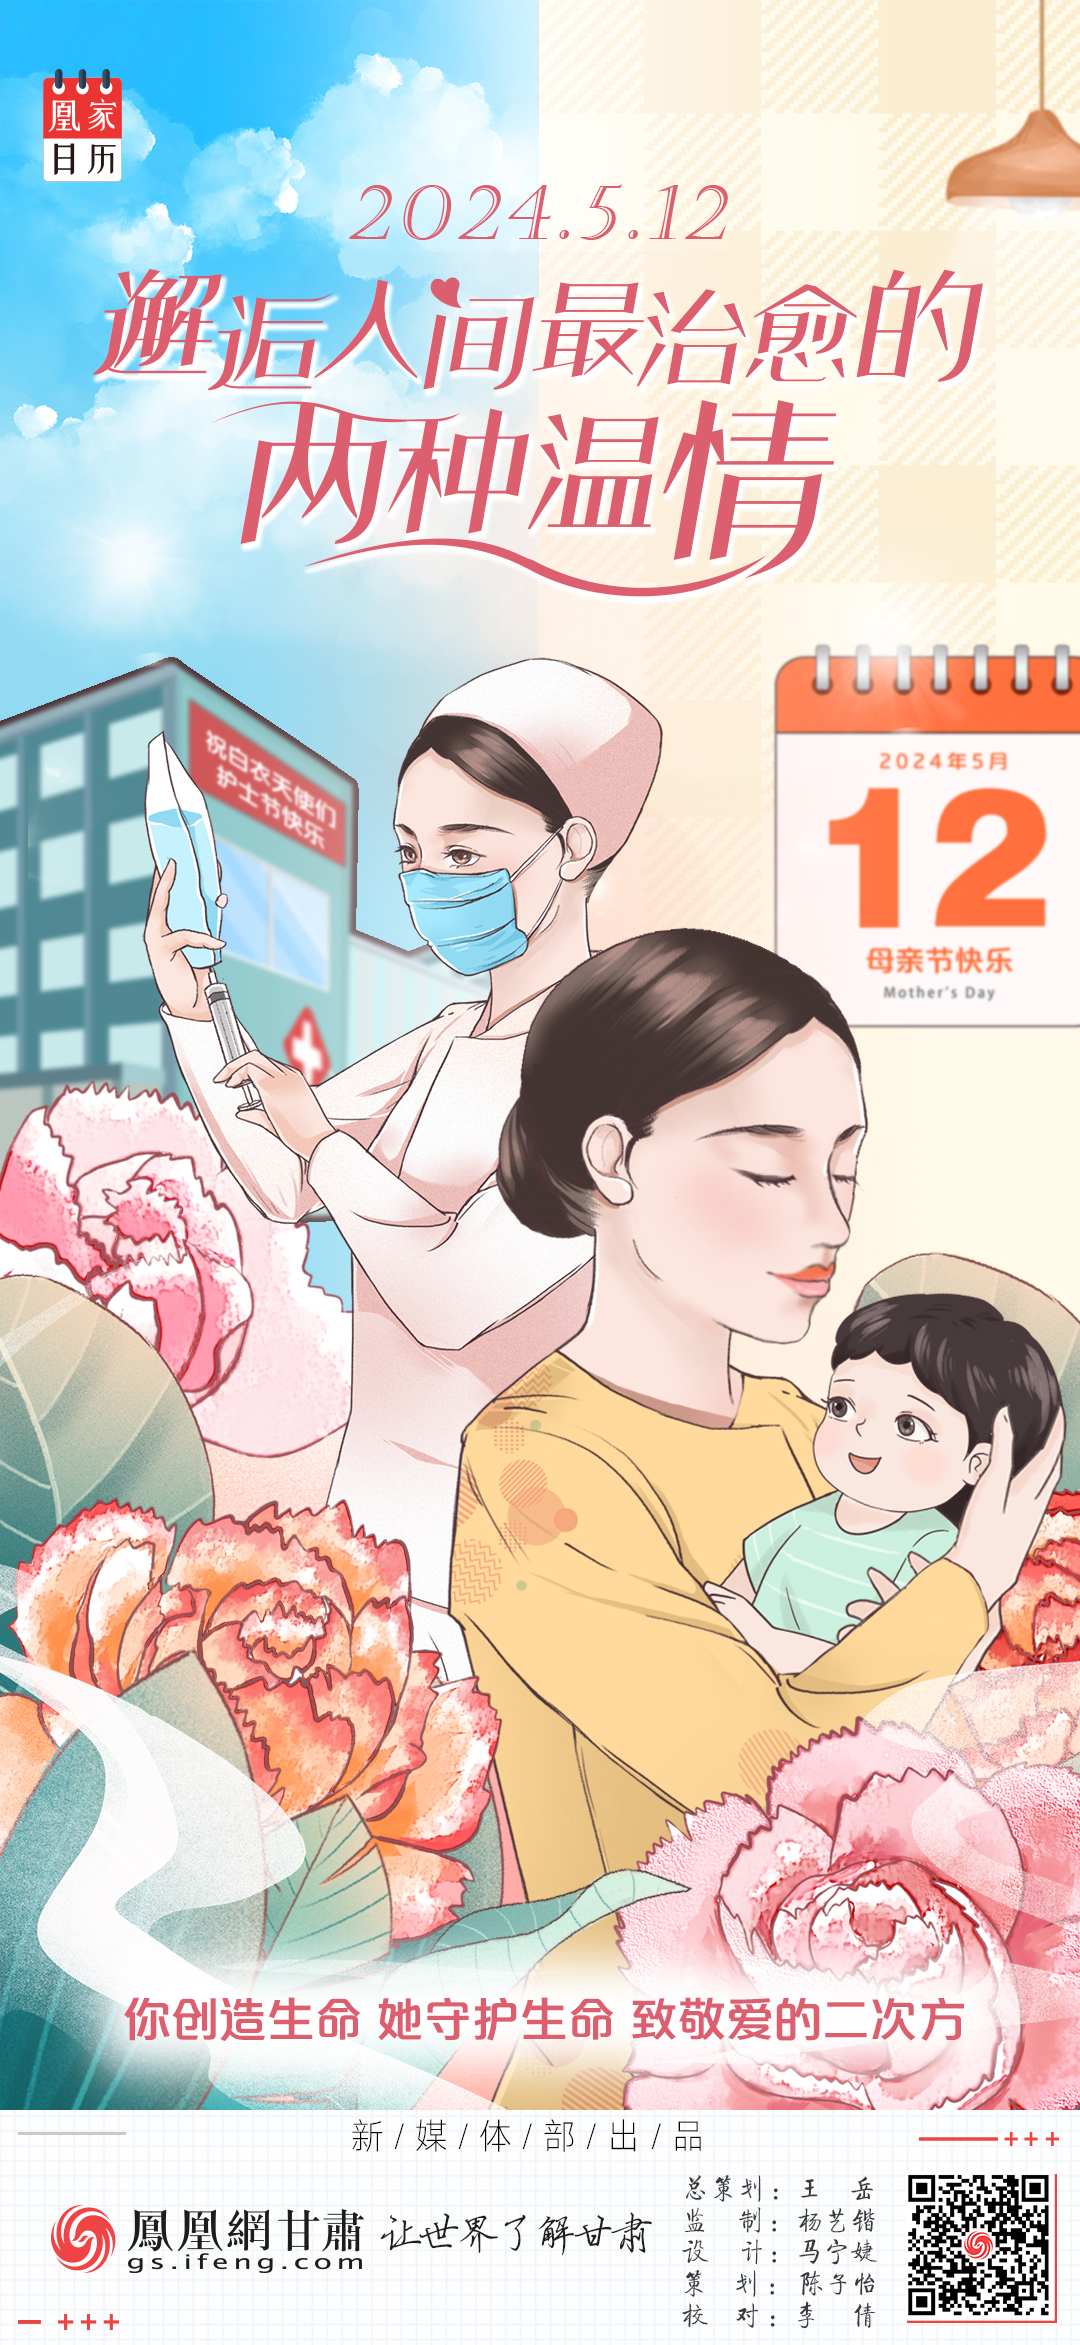 海报丨母亲节遇上护士节　邂逅人间最治愈的两种温情